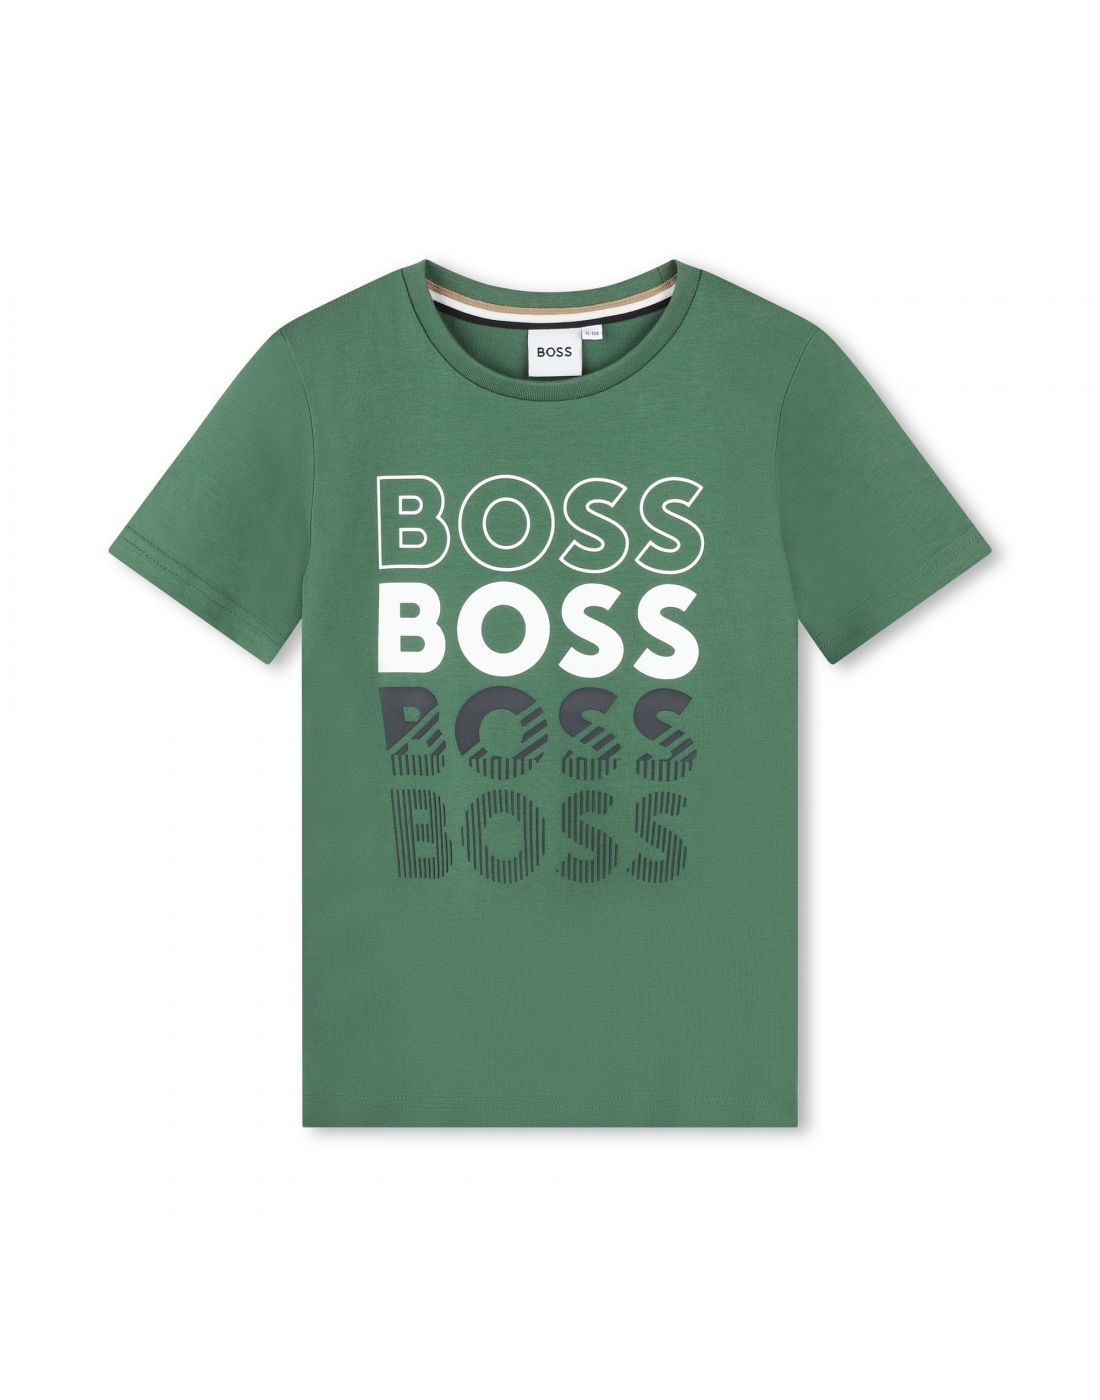 Παιδική Μπλούζα Κοντό Μανίκι Boss, Boss, 24162208 | LapinKids.com | LAPIN  KIDS